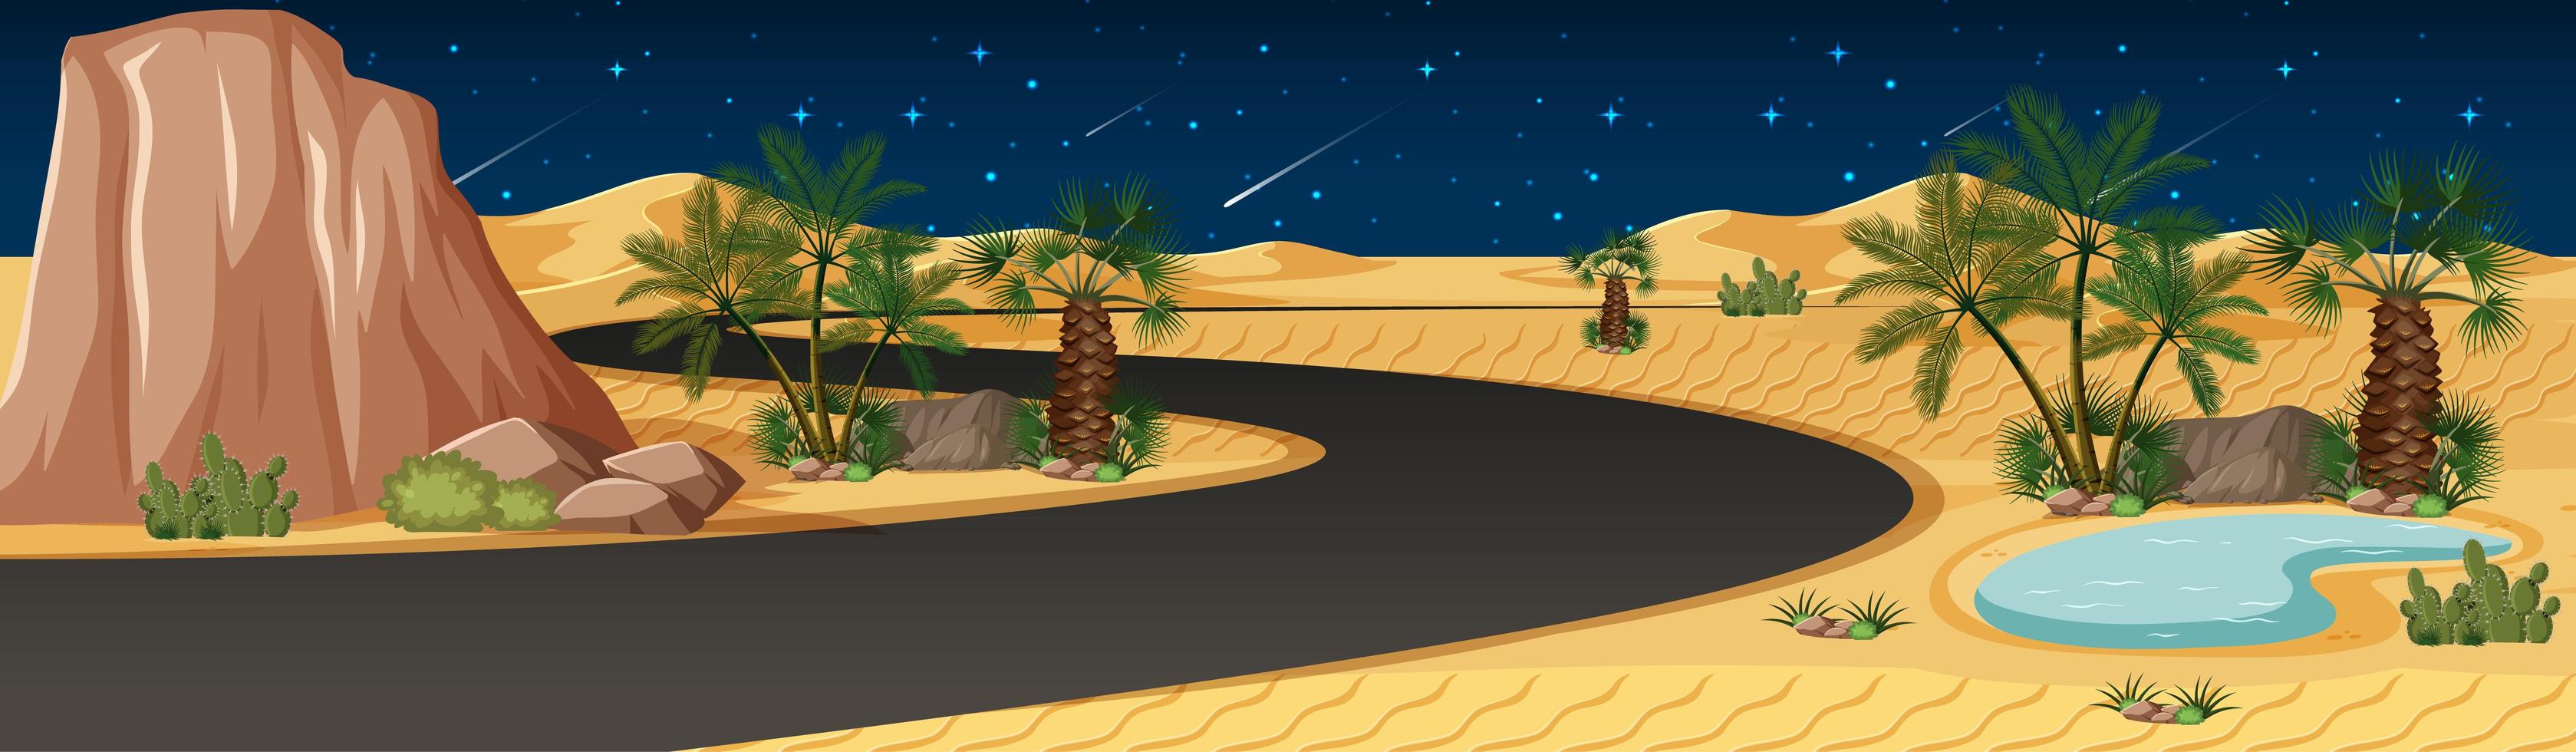 oasis du désert avec paysage de longue route à la scène de nuit vecteur